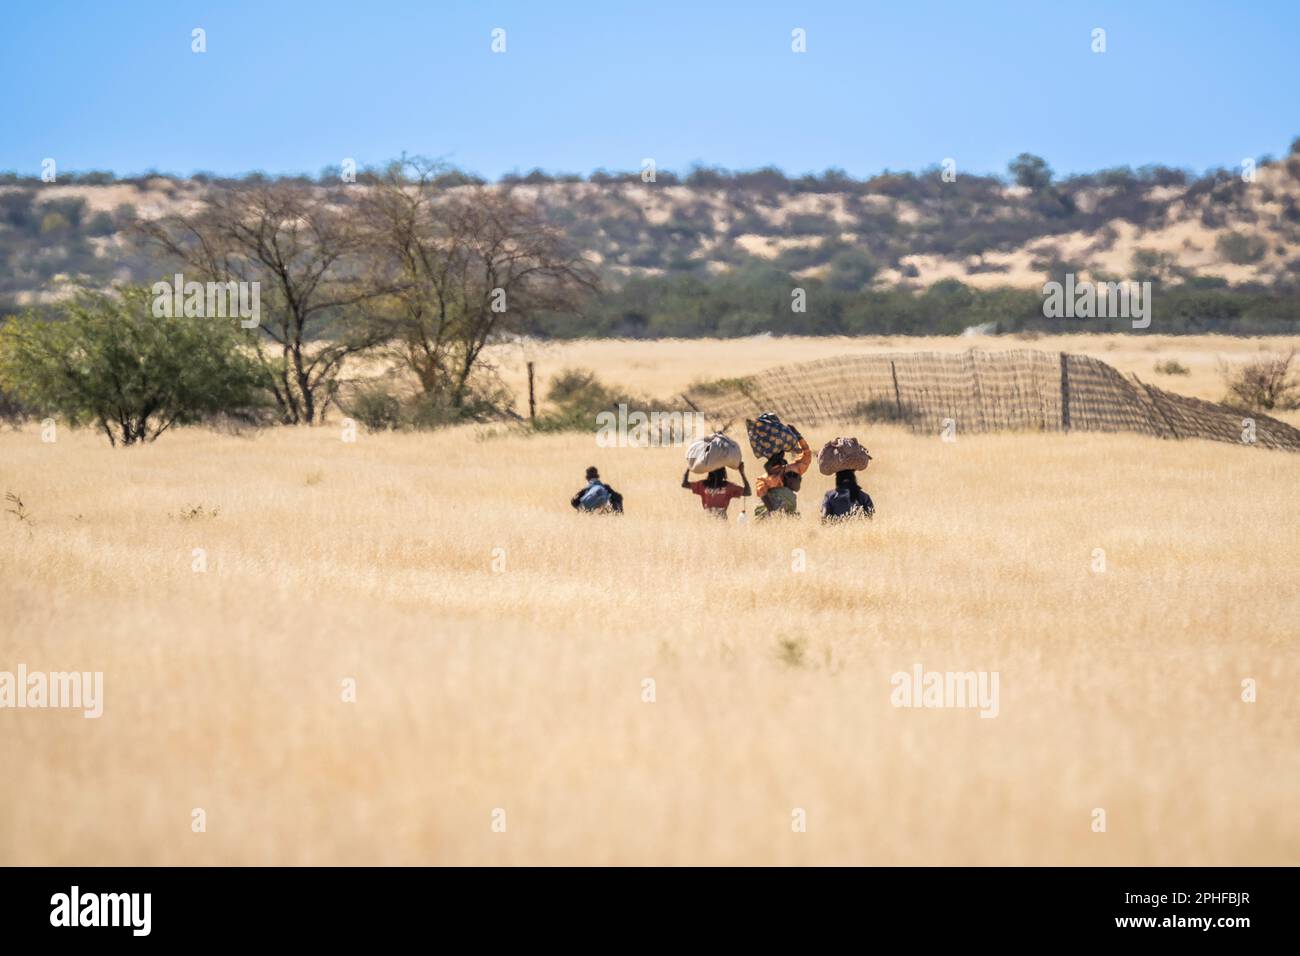 Les habitants africains, les femmes et les enfants, marchant dans des prairies sèches et élevées portant des articles sur leur tête. Namibie, Afrique Banque D'Images